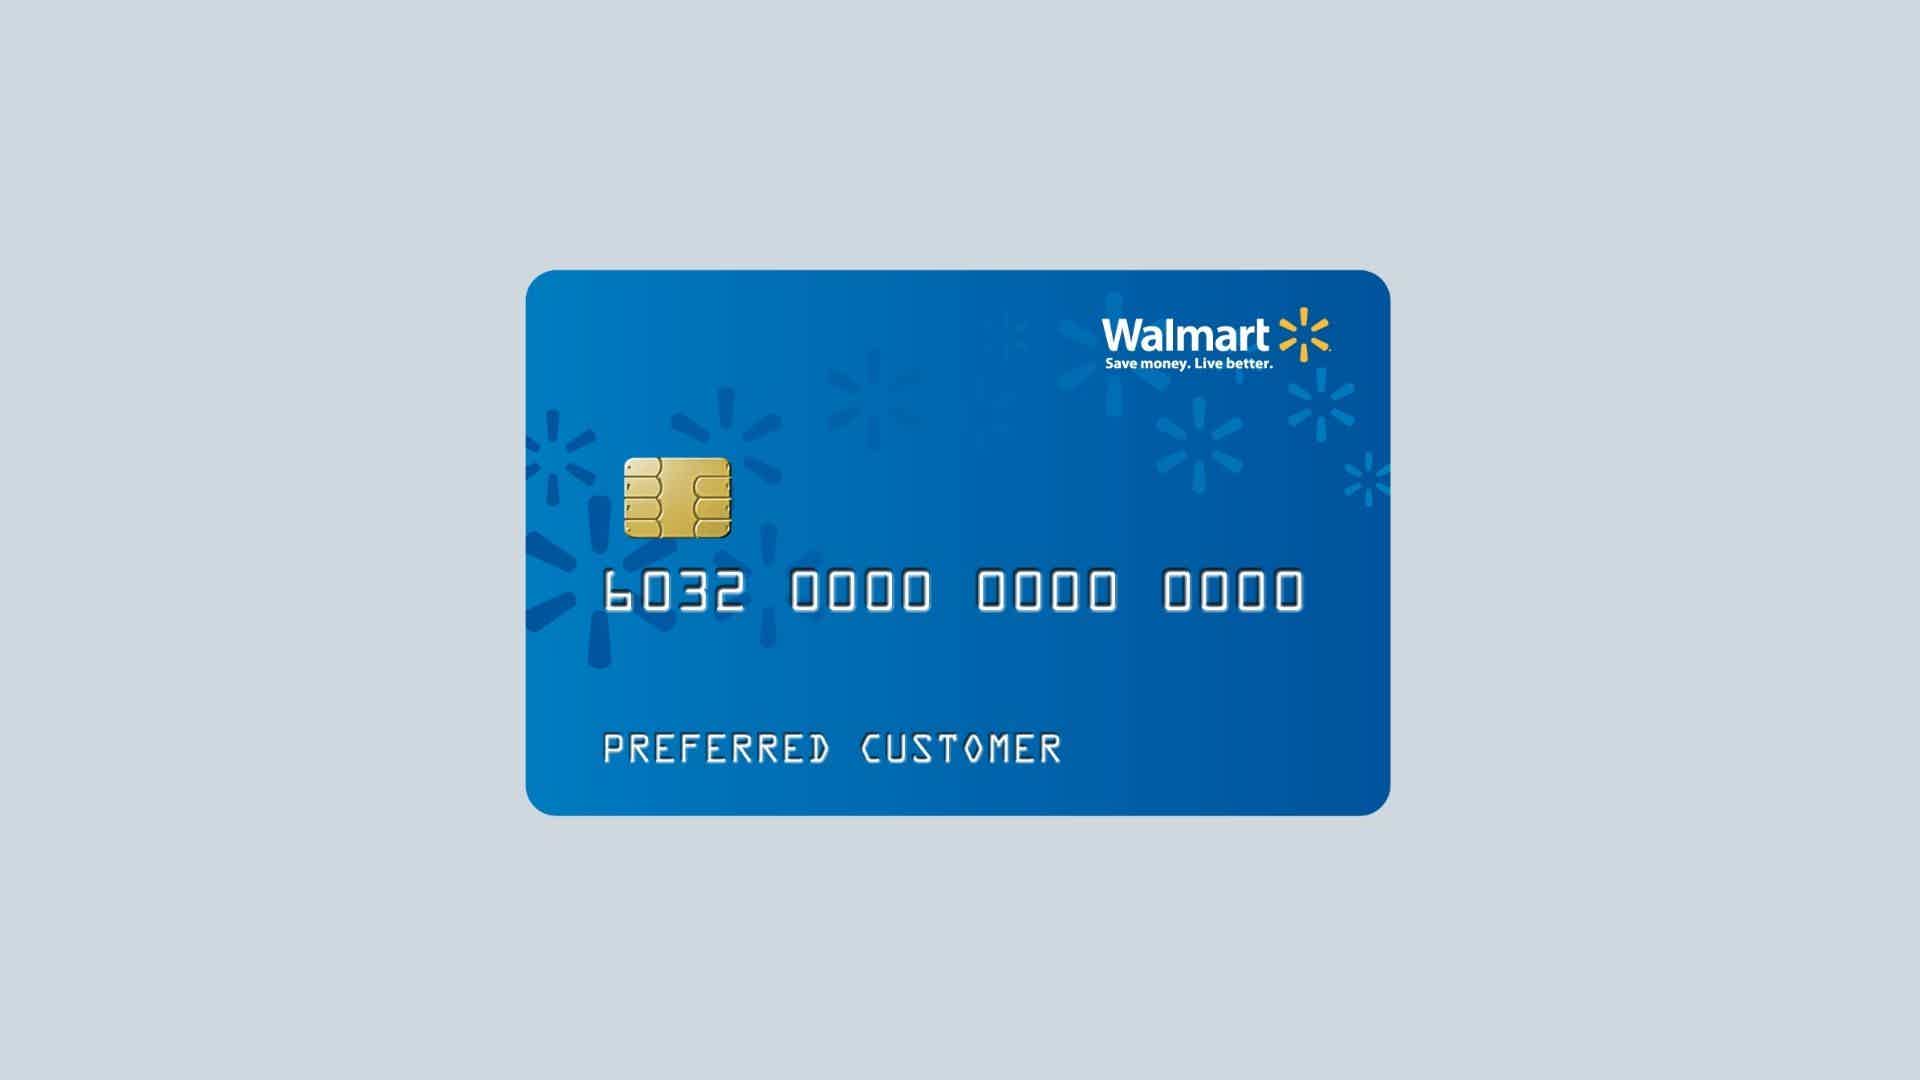 Como solicitar o cartão Walmart? Fonte: Walmart.